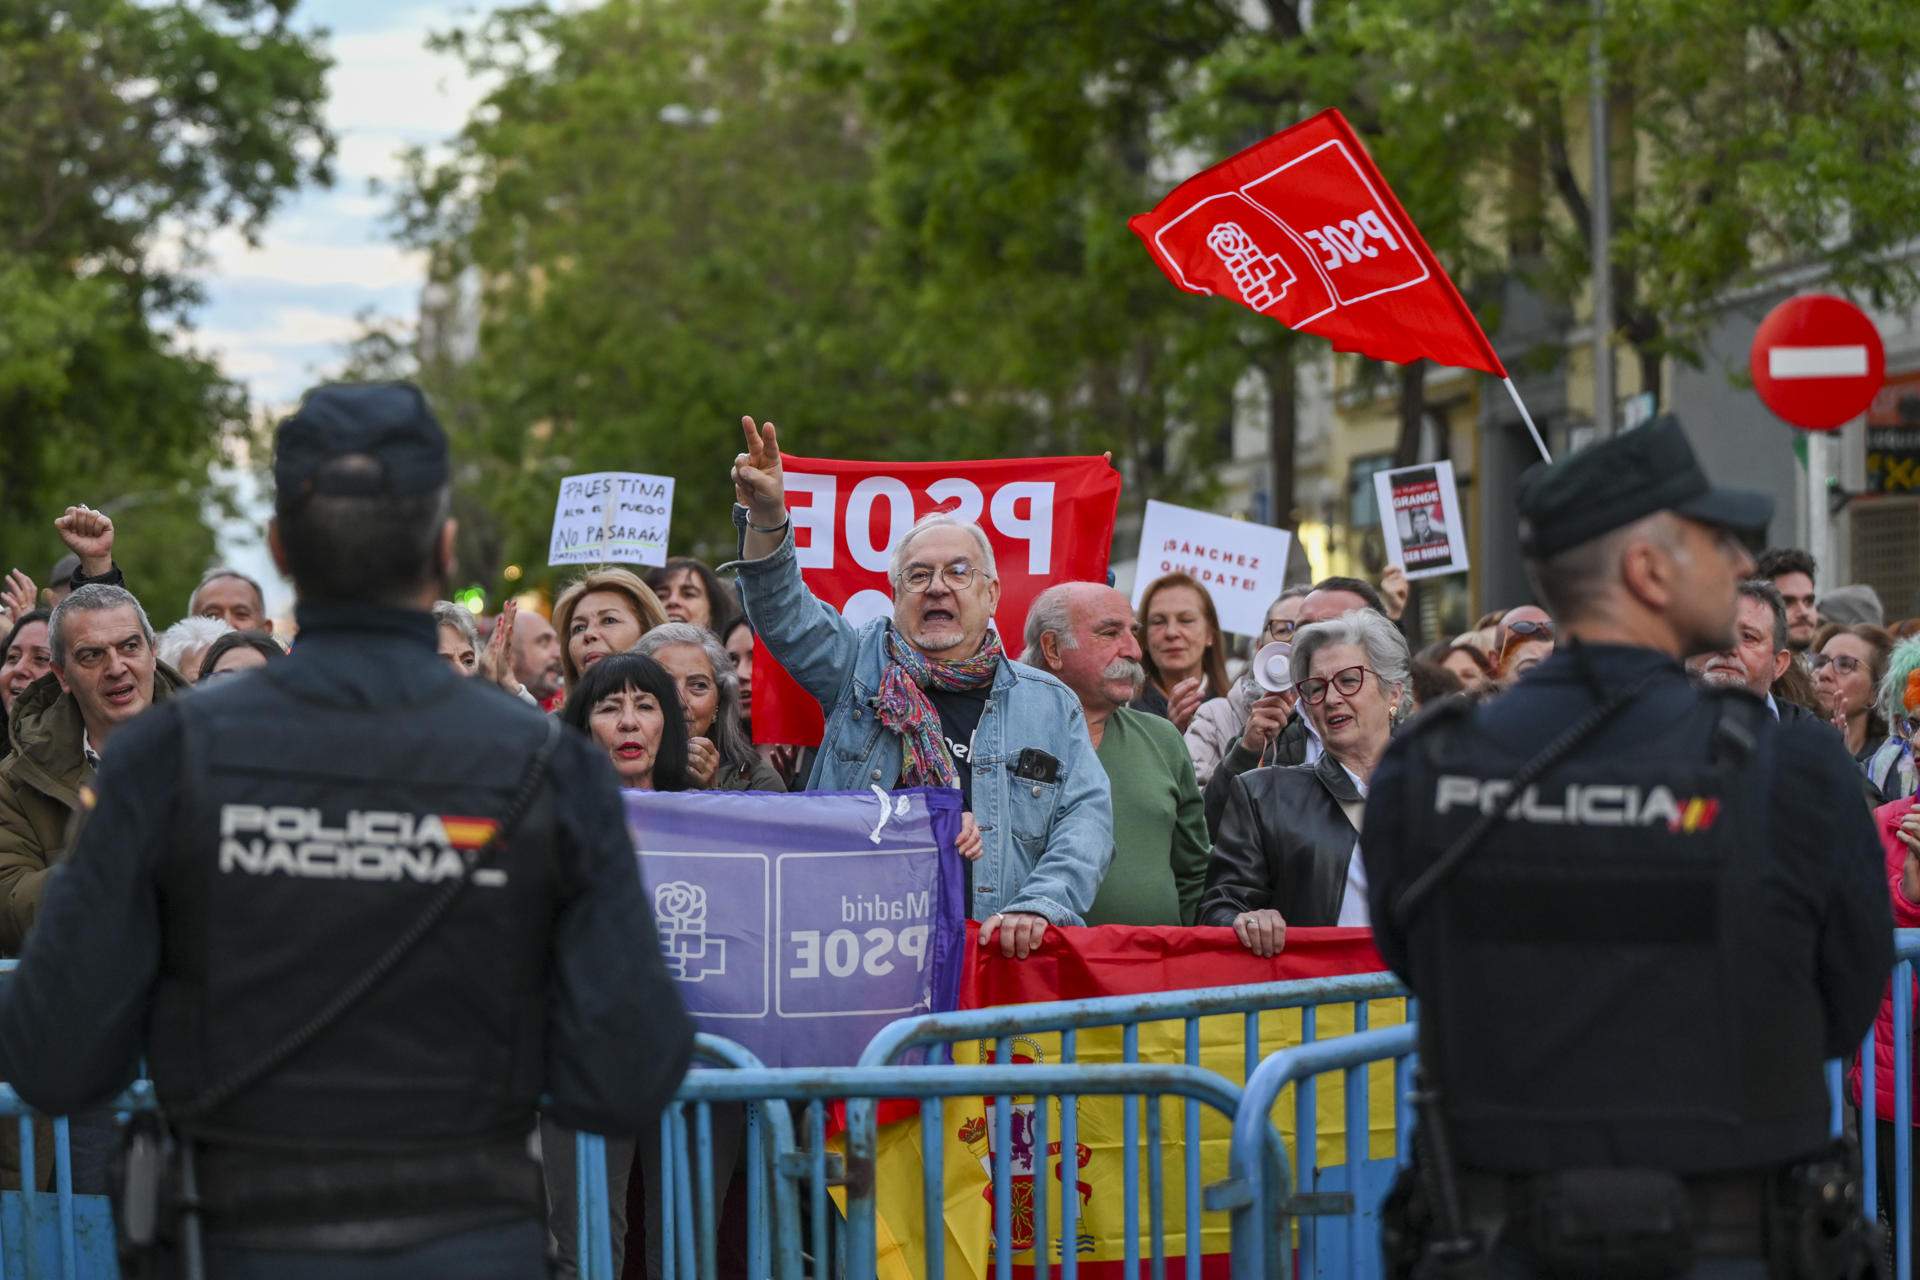 El pulso entre detractores y defensores de Sánchez, en la calle: chocan dos manifestaciones en Ferraz